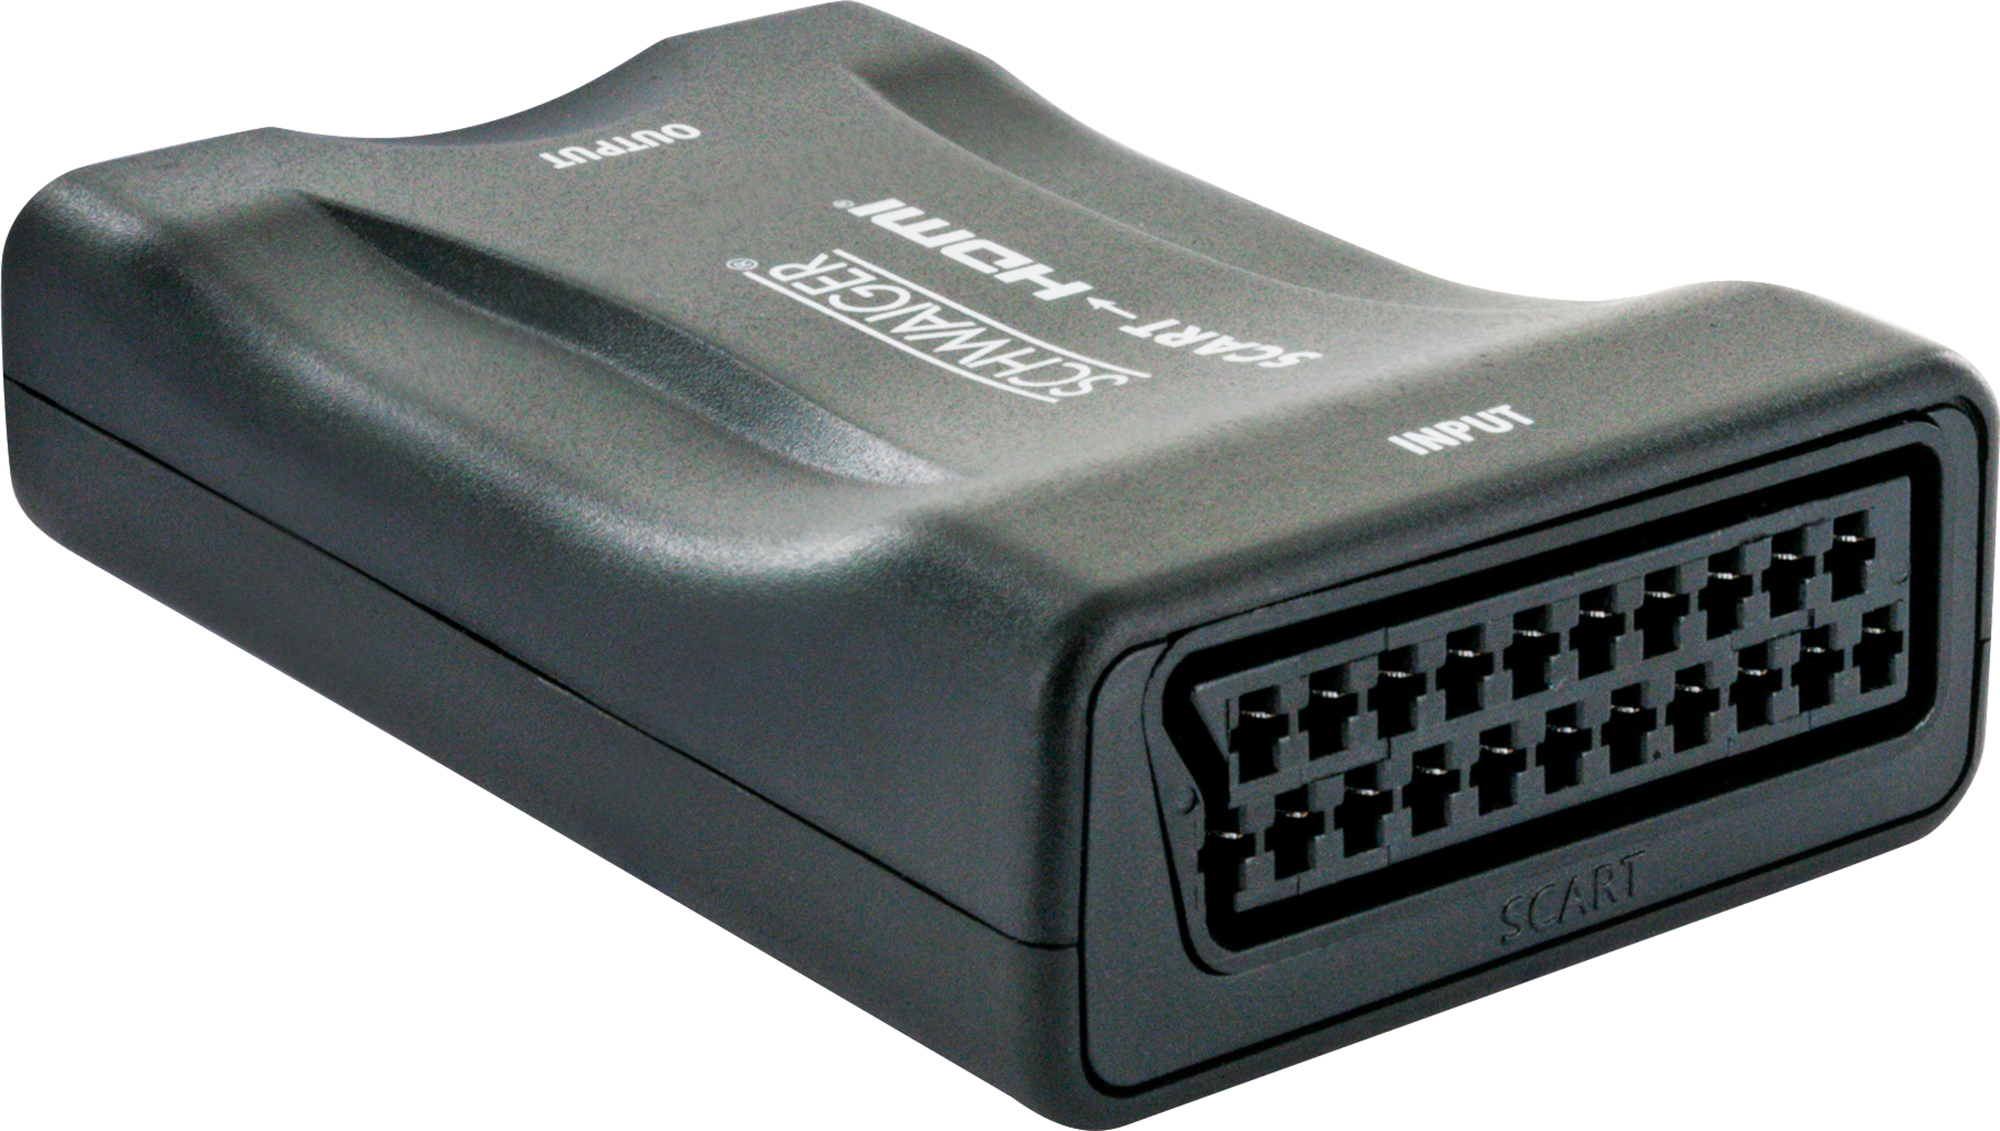 SCHWAIGER SCART-HDMI-Konverter 533- -HDMSCA01